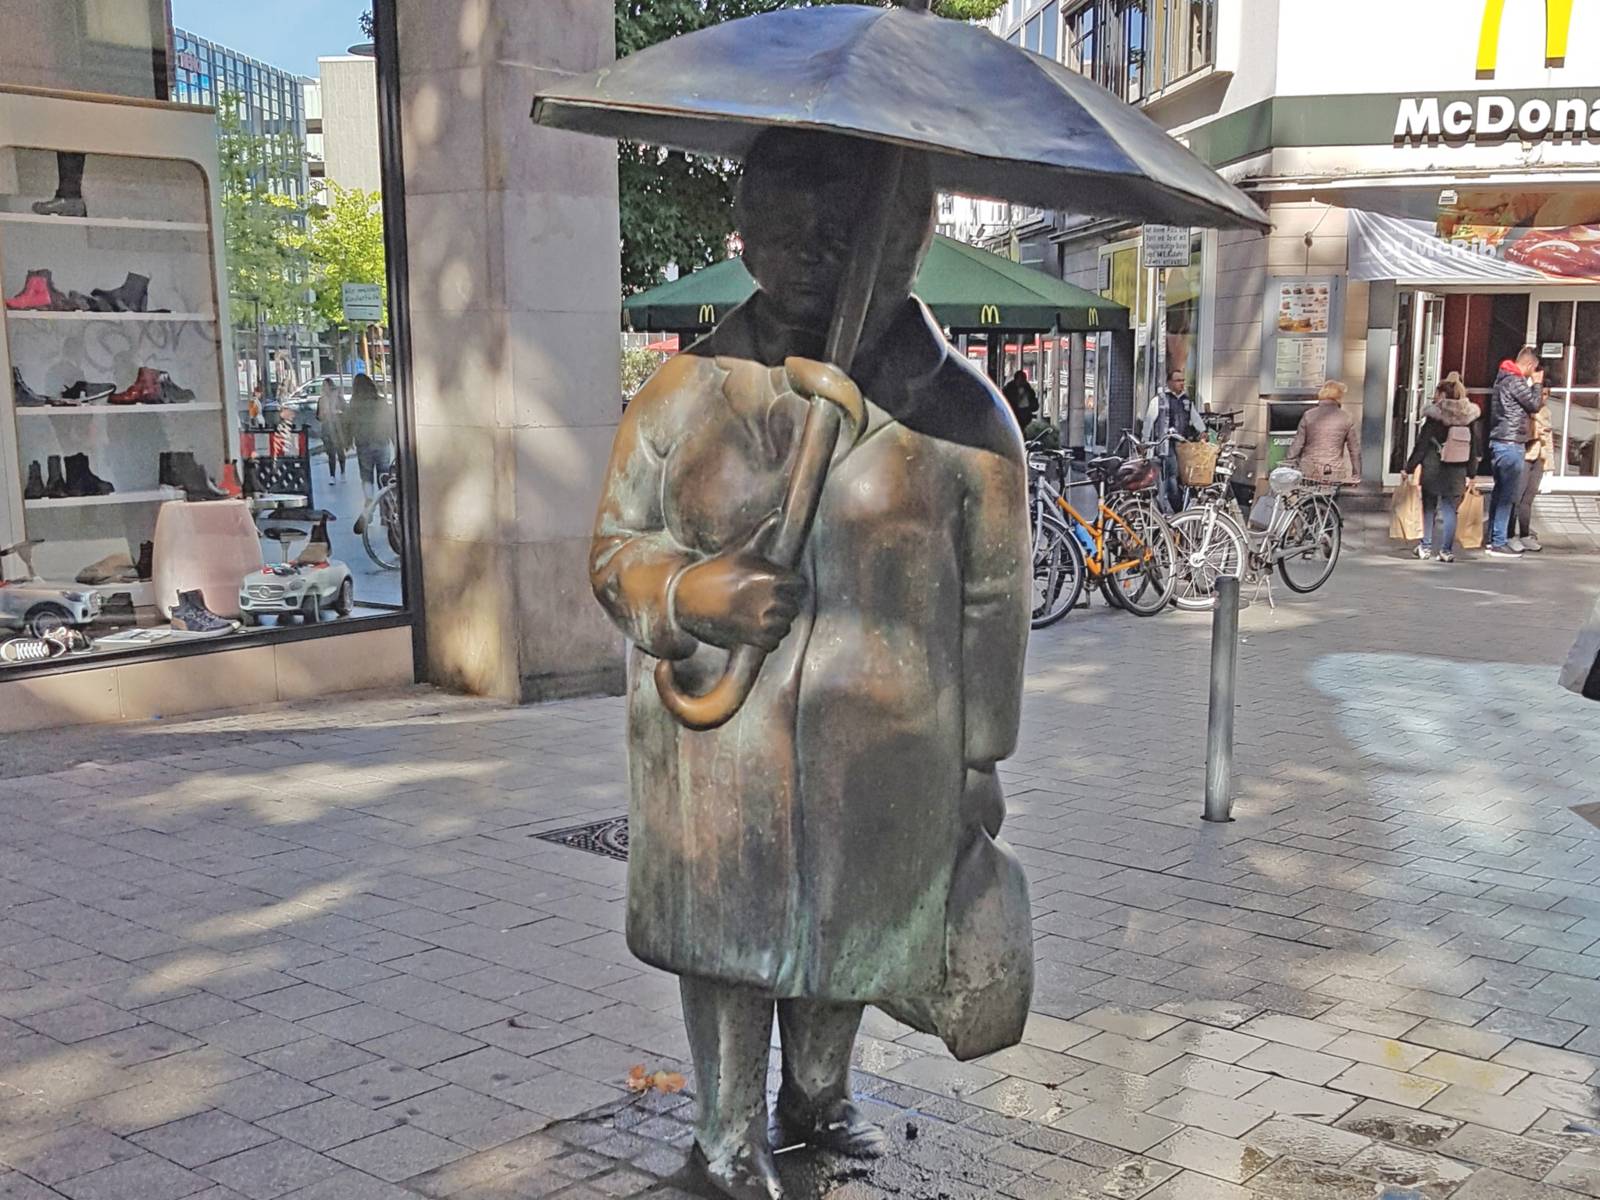 Skupltur einer Frau mit Regenschirm